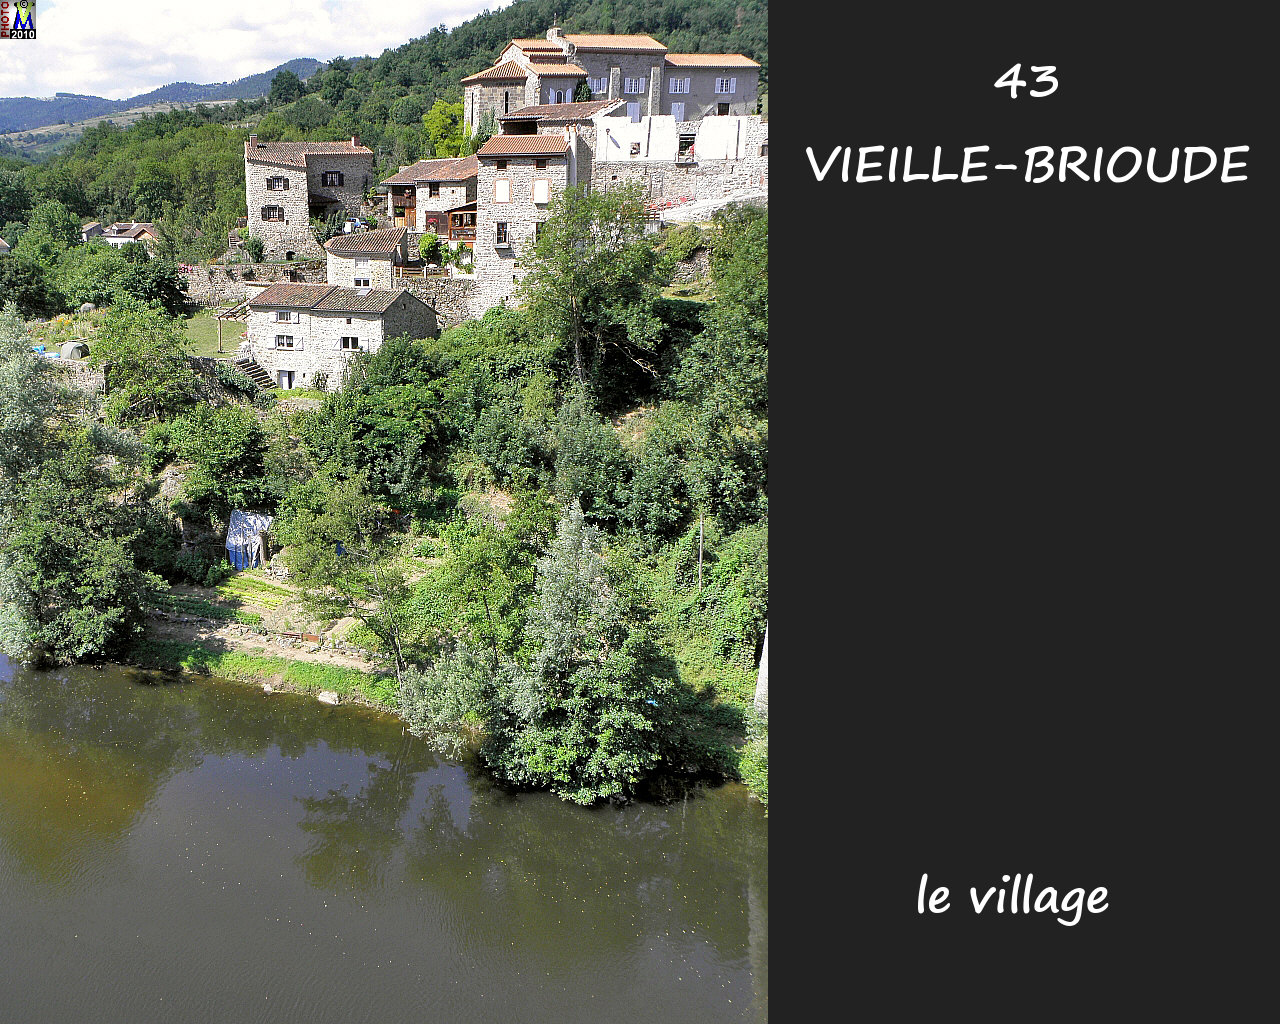 43VIEILLE-BRIOUDE_village_106.jpg